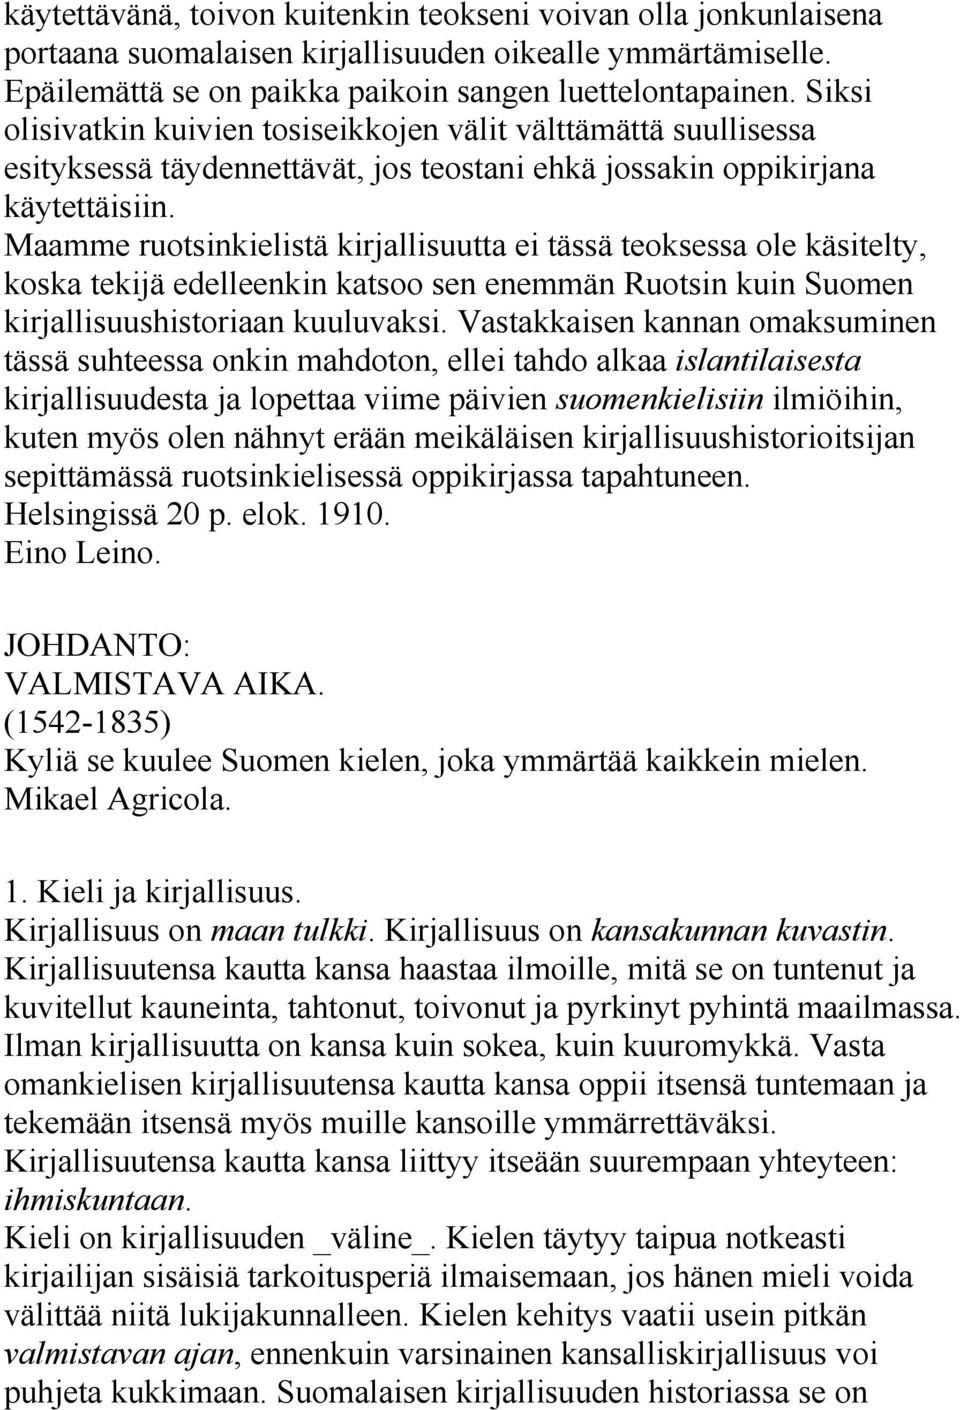 Maamme ruotsinkielistä kirjallisuutta ei tässä teoksessa ole käsitelty, koska tekijä edelleenkin katsoo sen enemmän Ruotsin kuin Suomen kirjallisuushistoriaan kuuluvaksi.